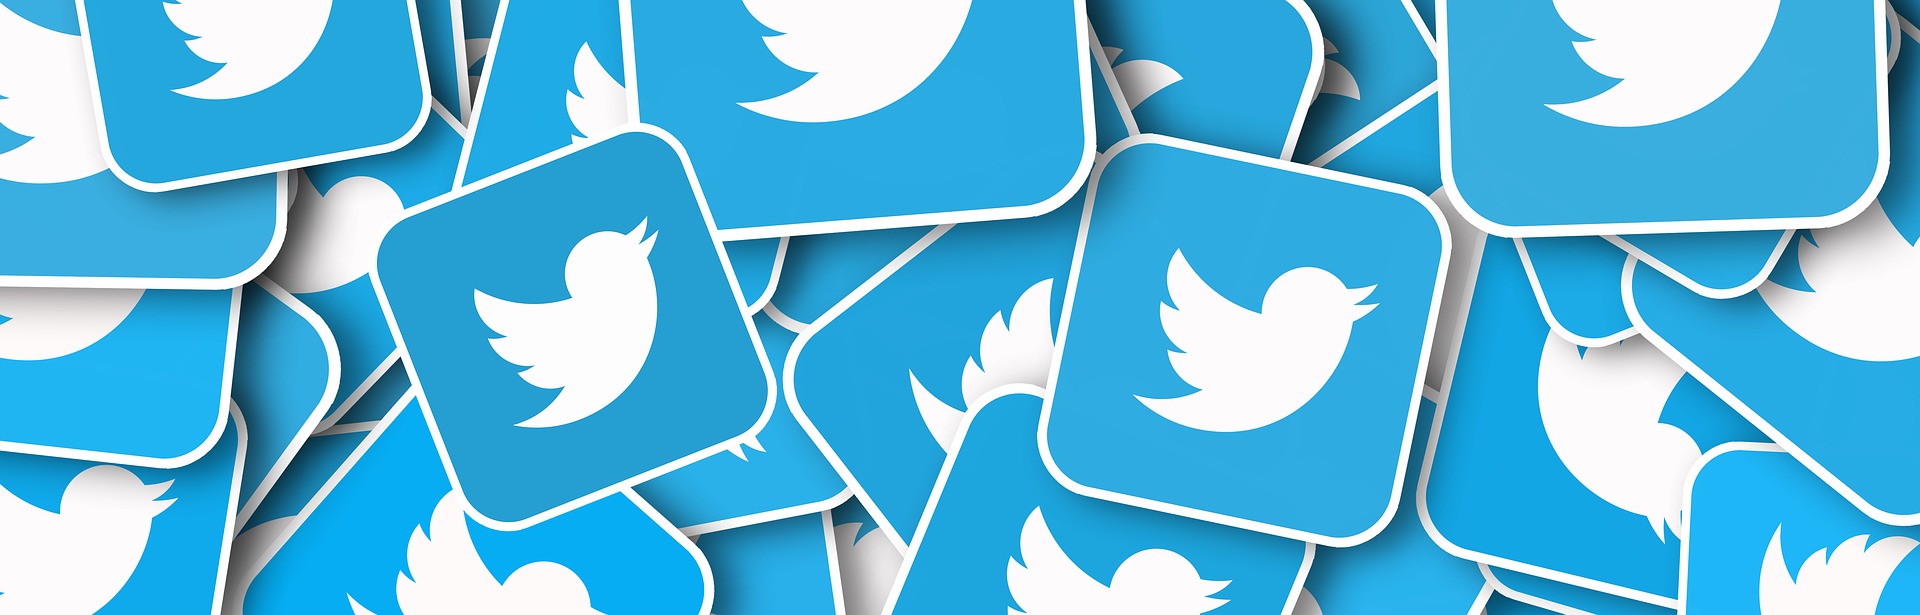 Twitter Faces Complaints Regarding Data Retention